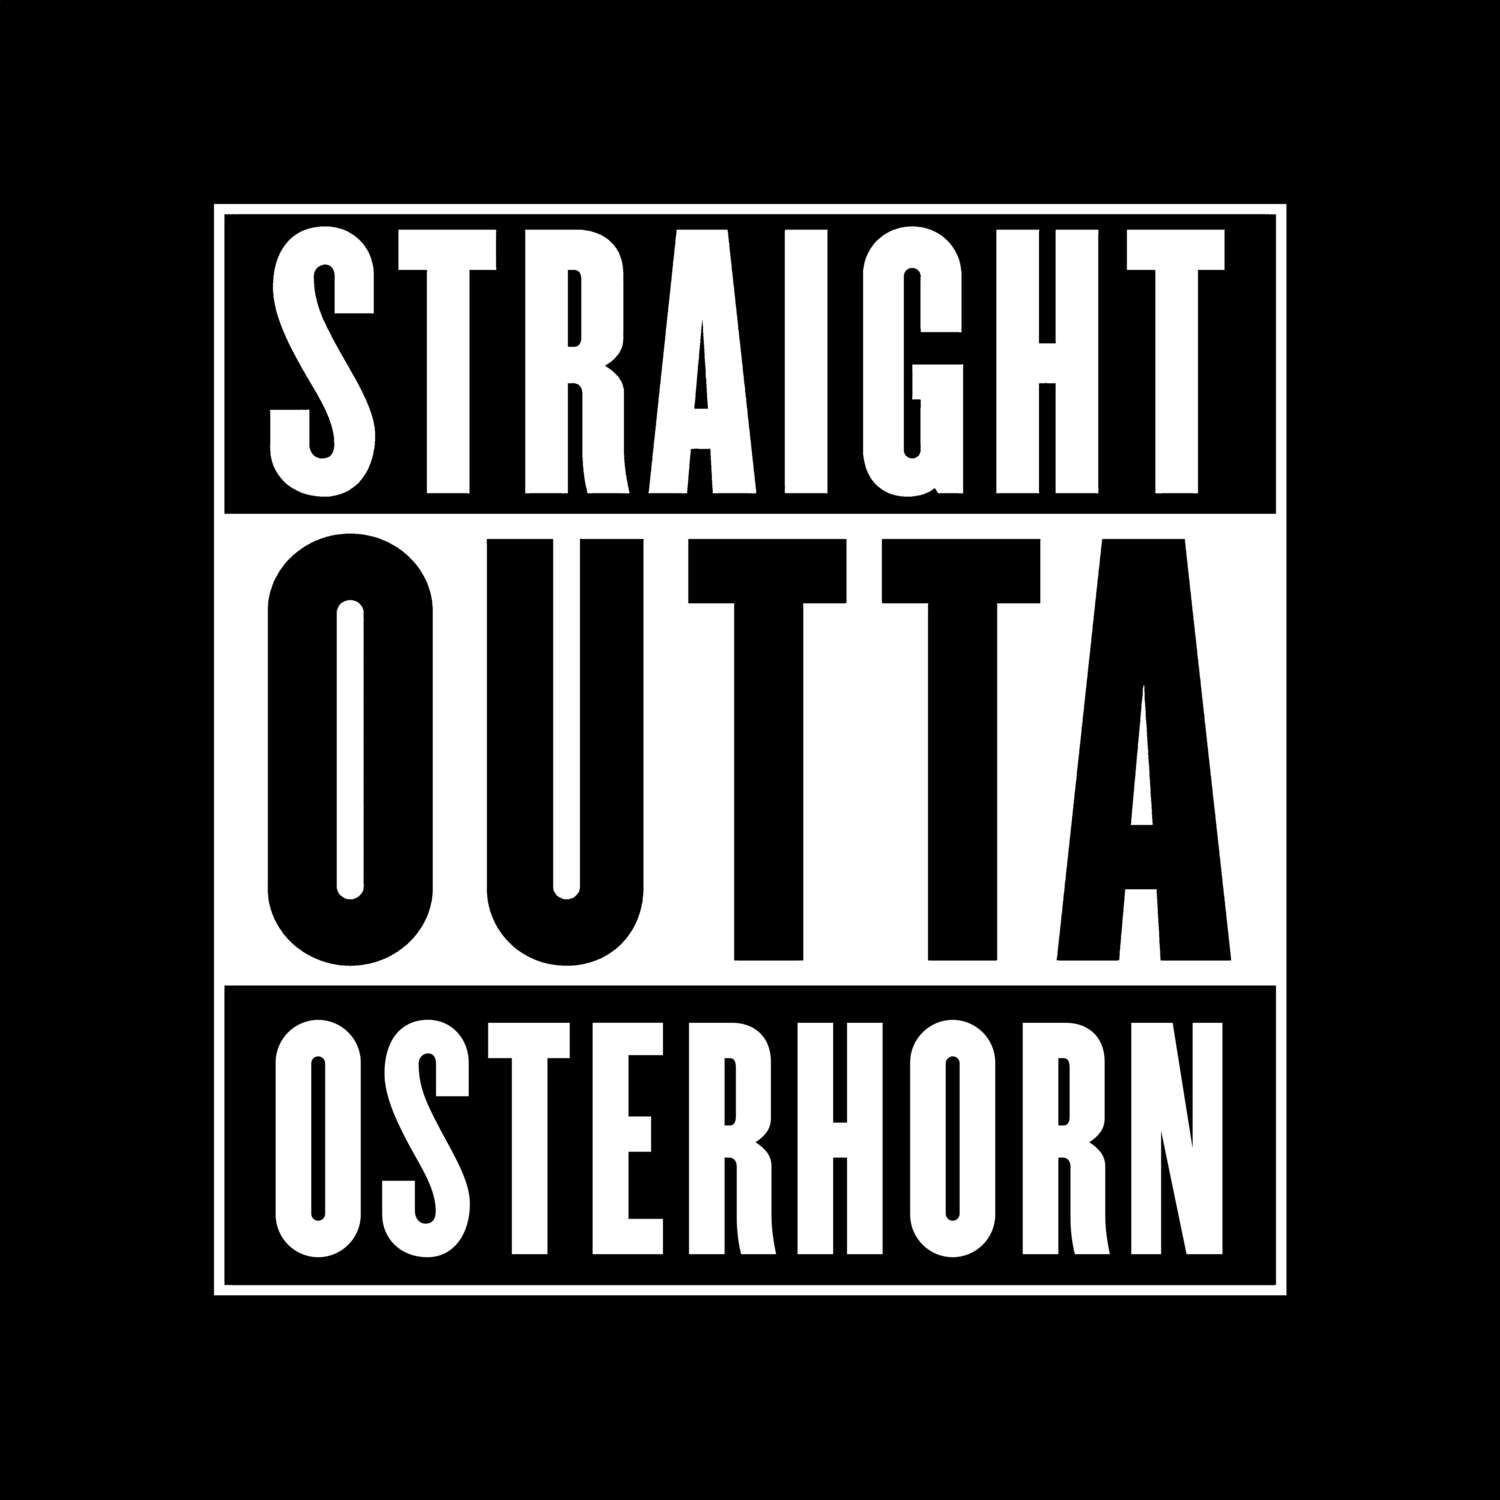 Osterhorn T-Shirt »Straight Outta«